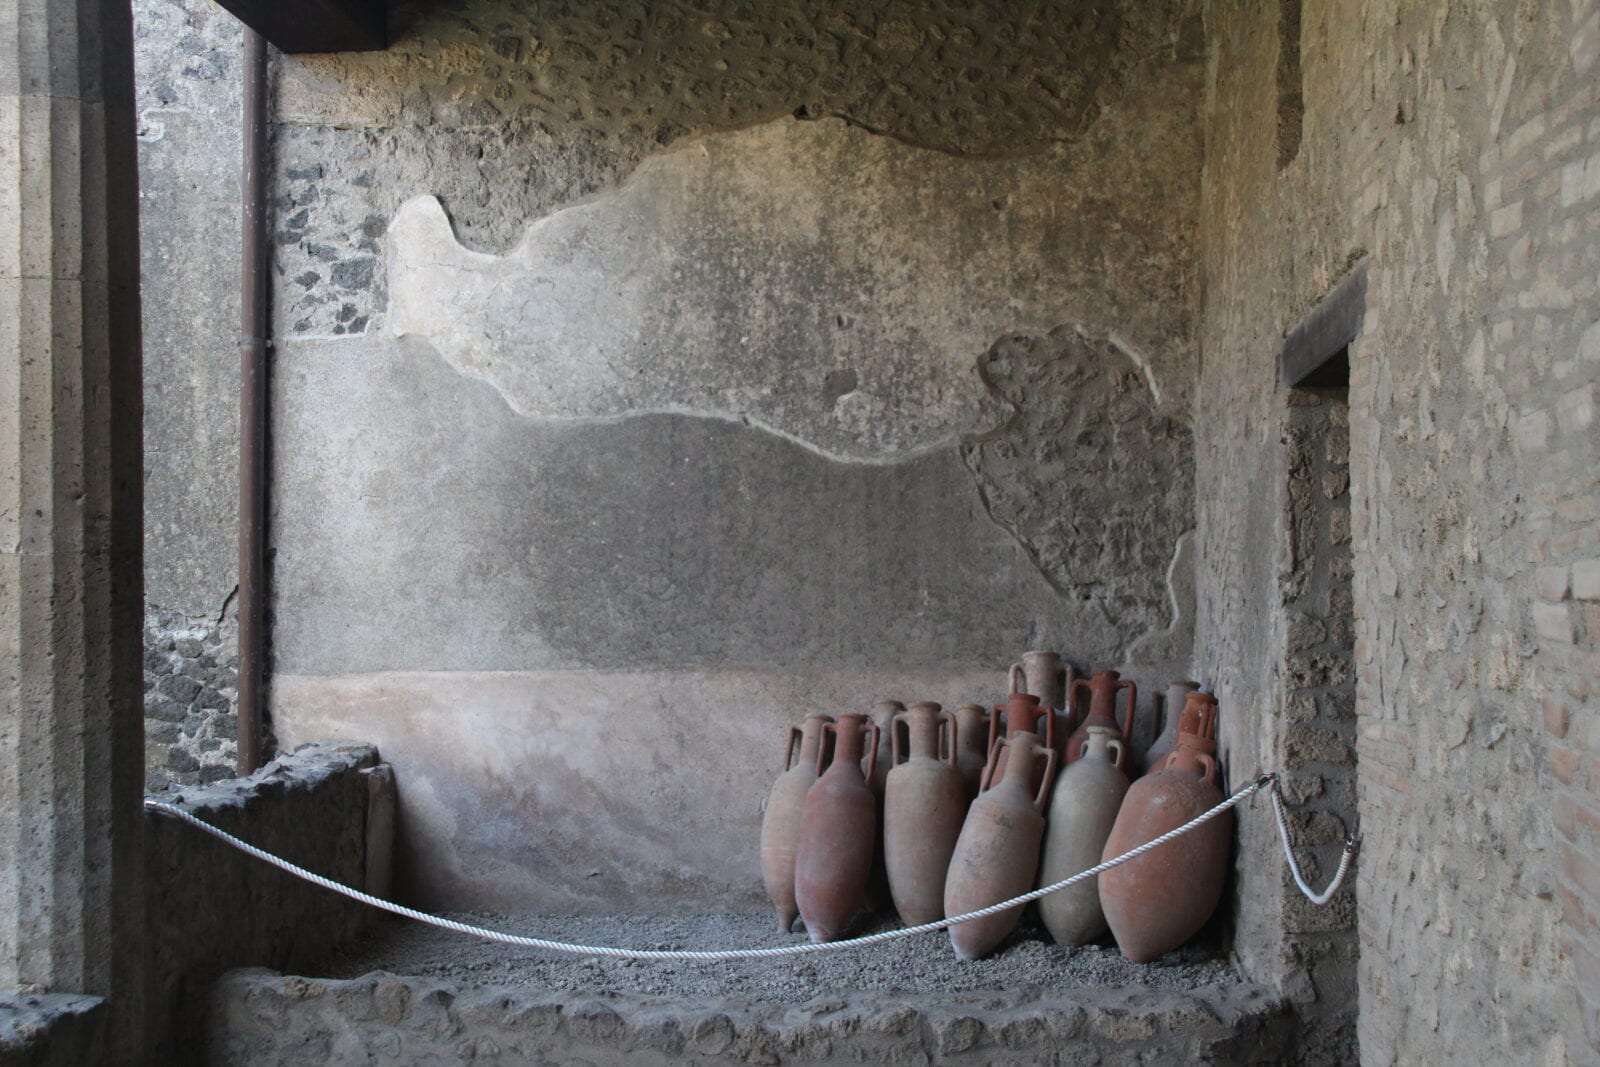 le famose anfore, simbolo universale di Pompei 